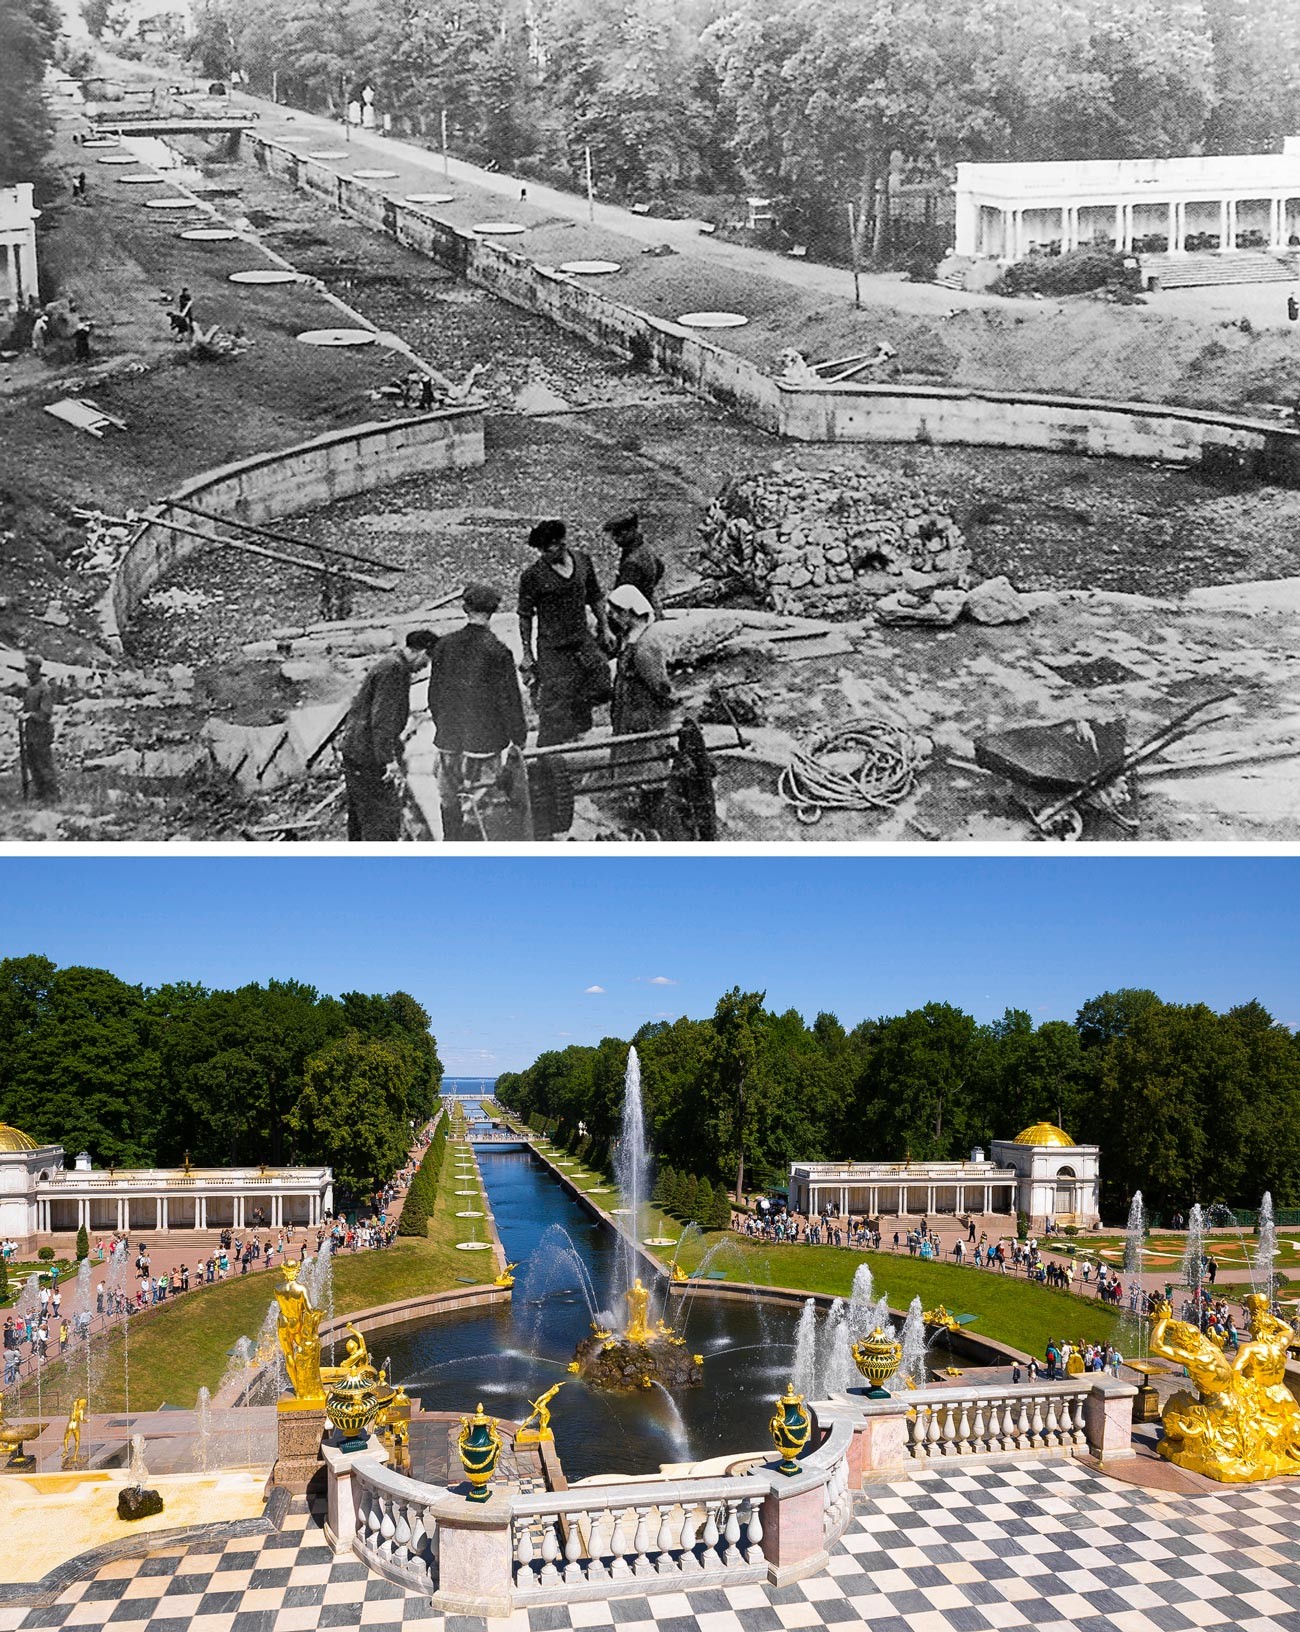 Fontana Boljšoj kaskad leta 1946 in danes